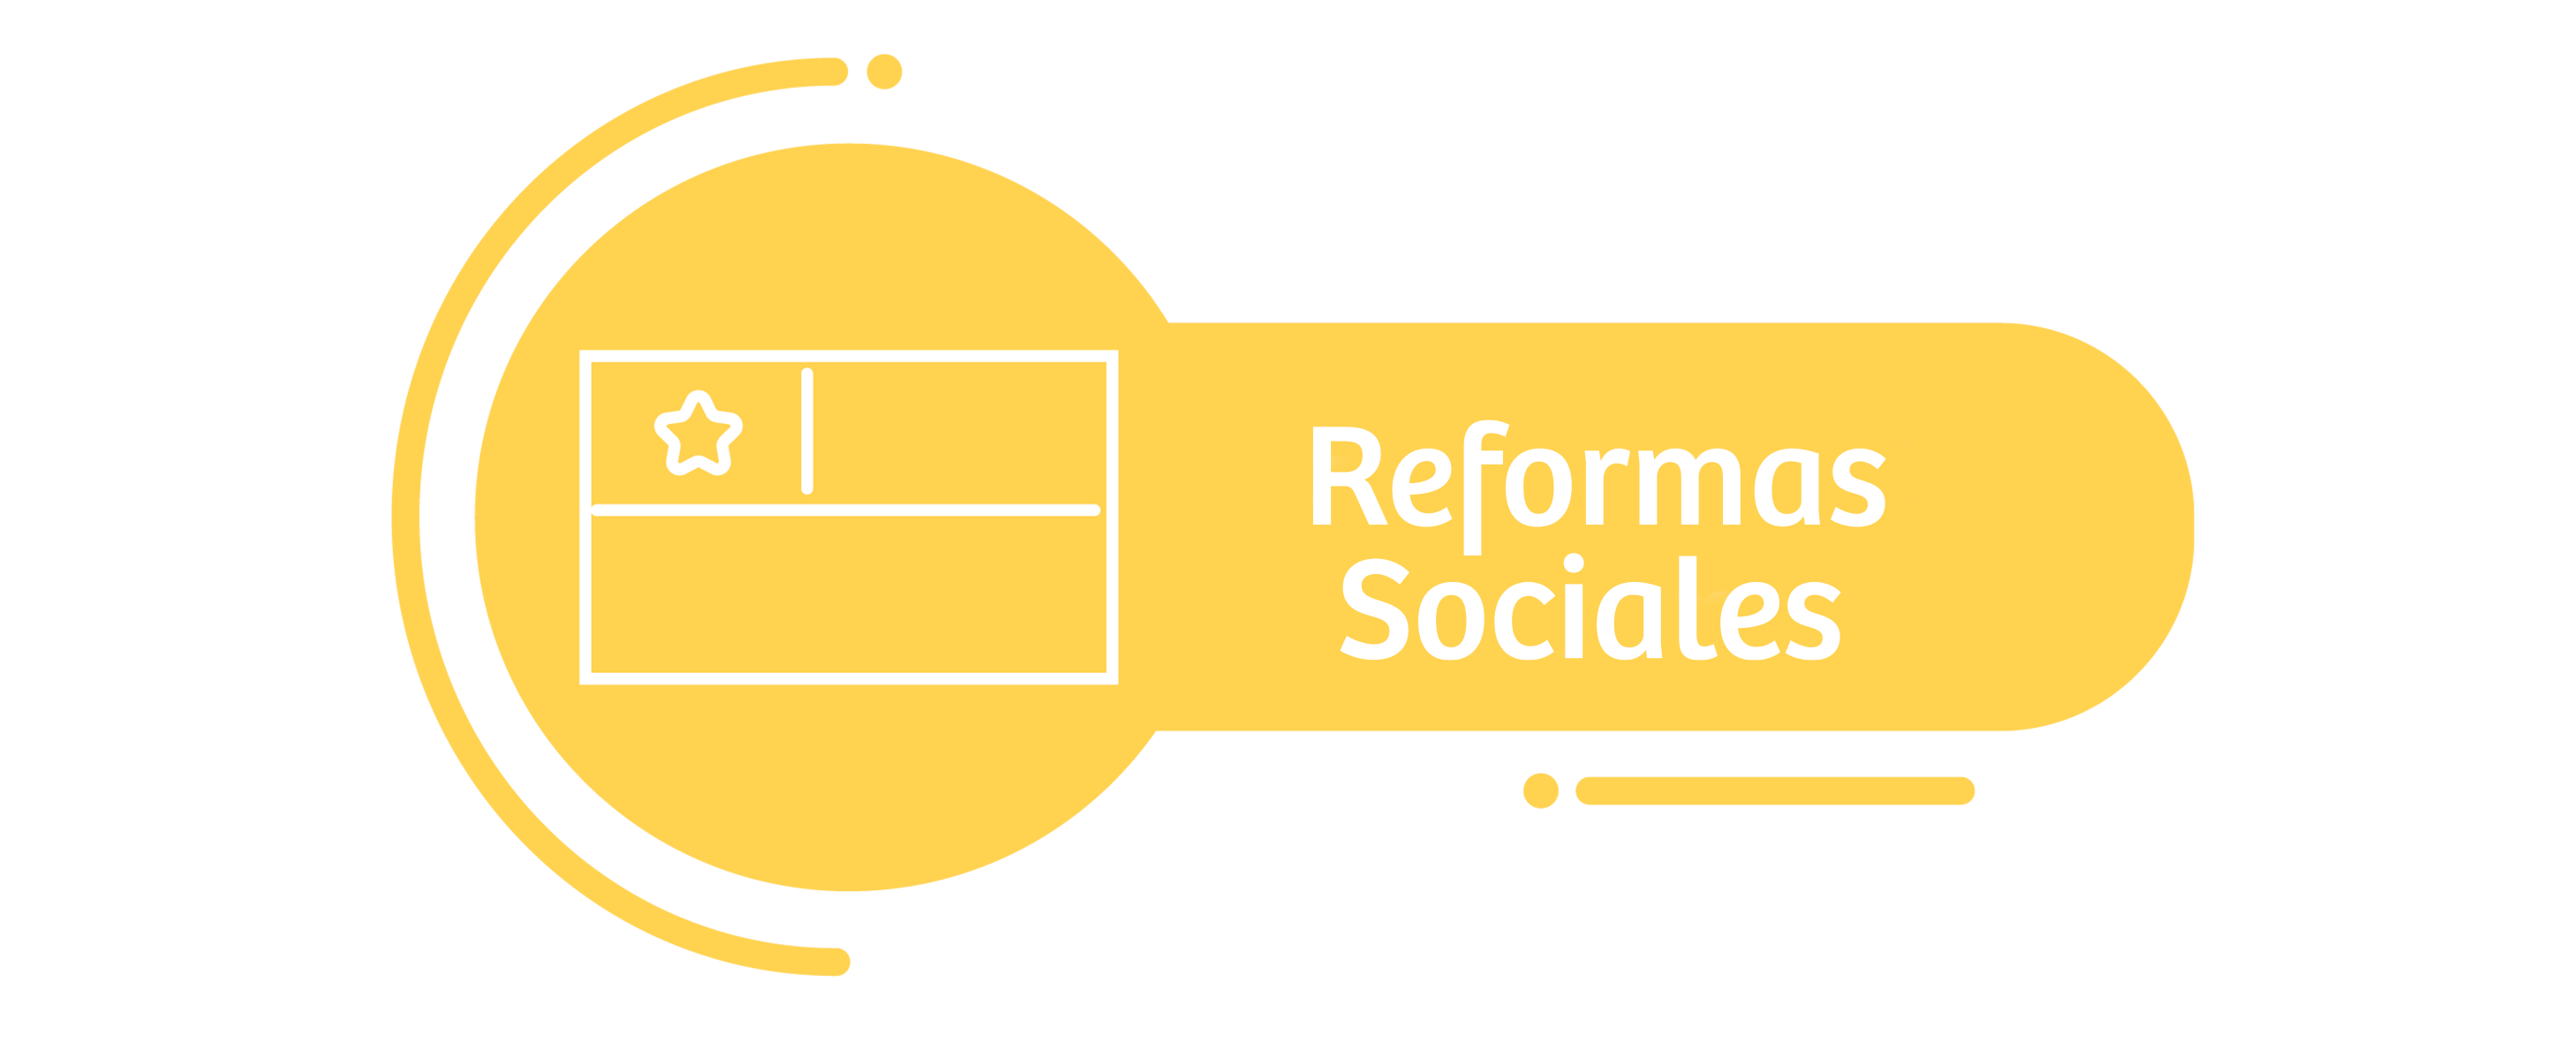 Reformas sociales